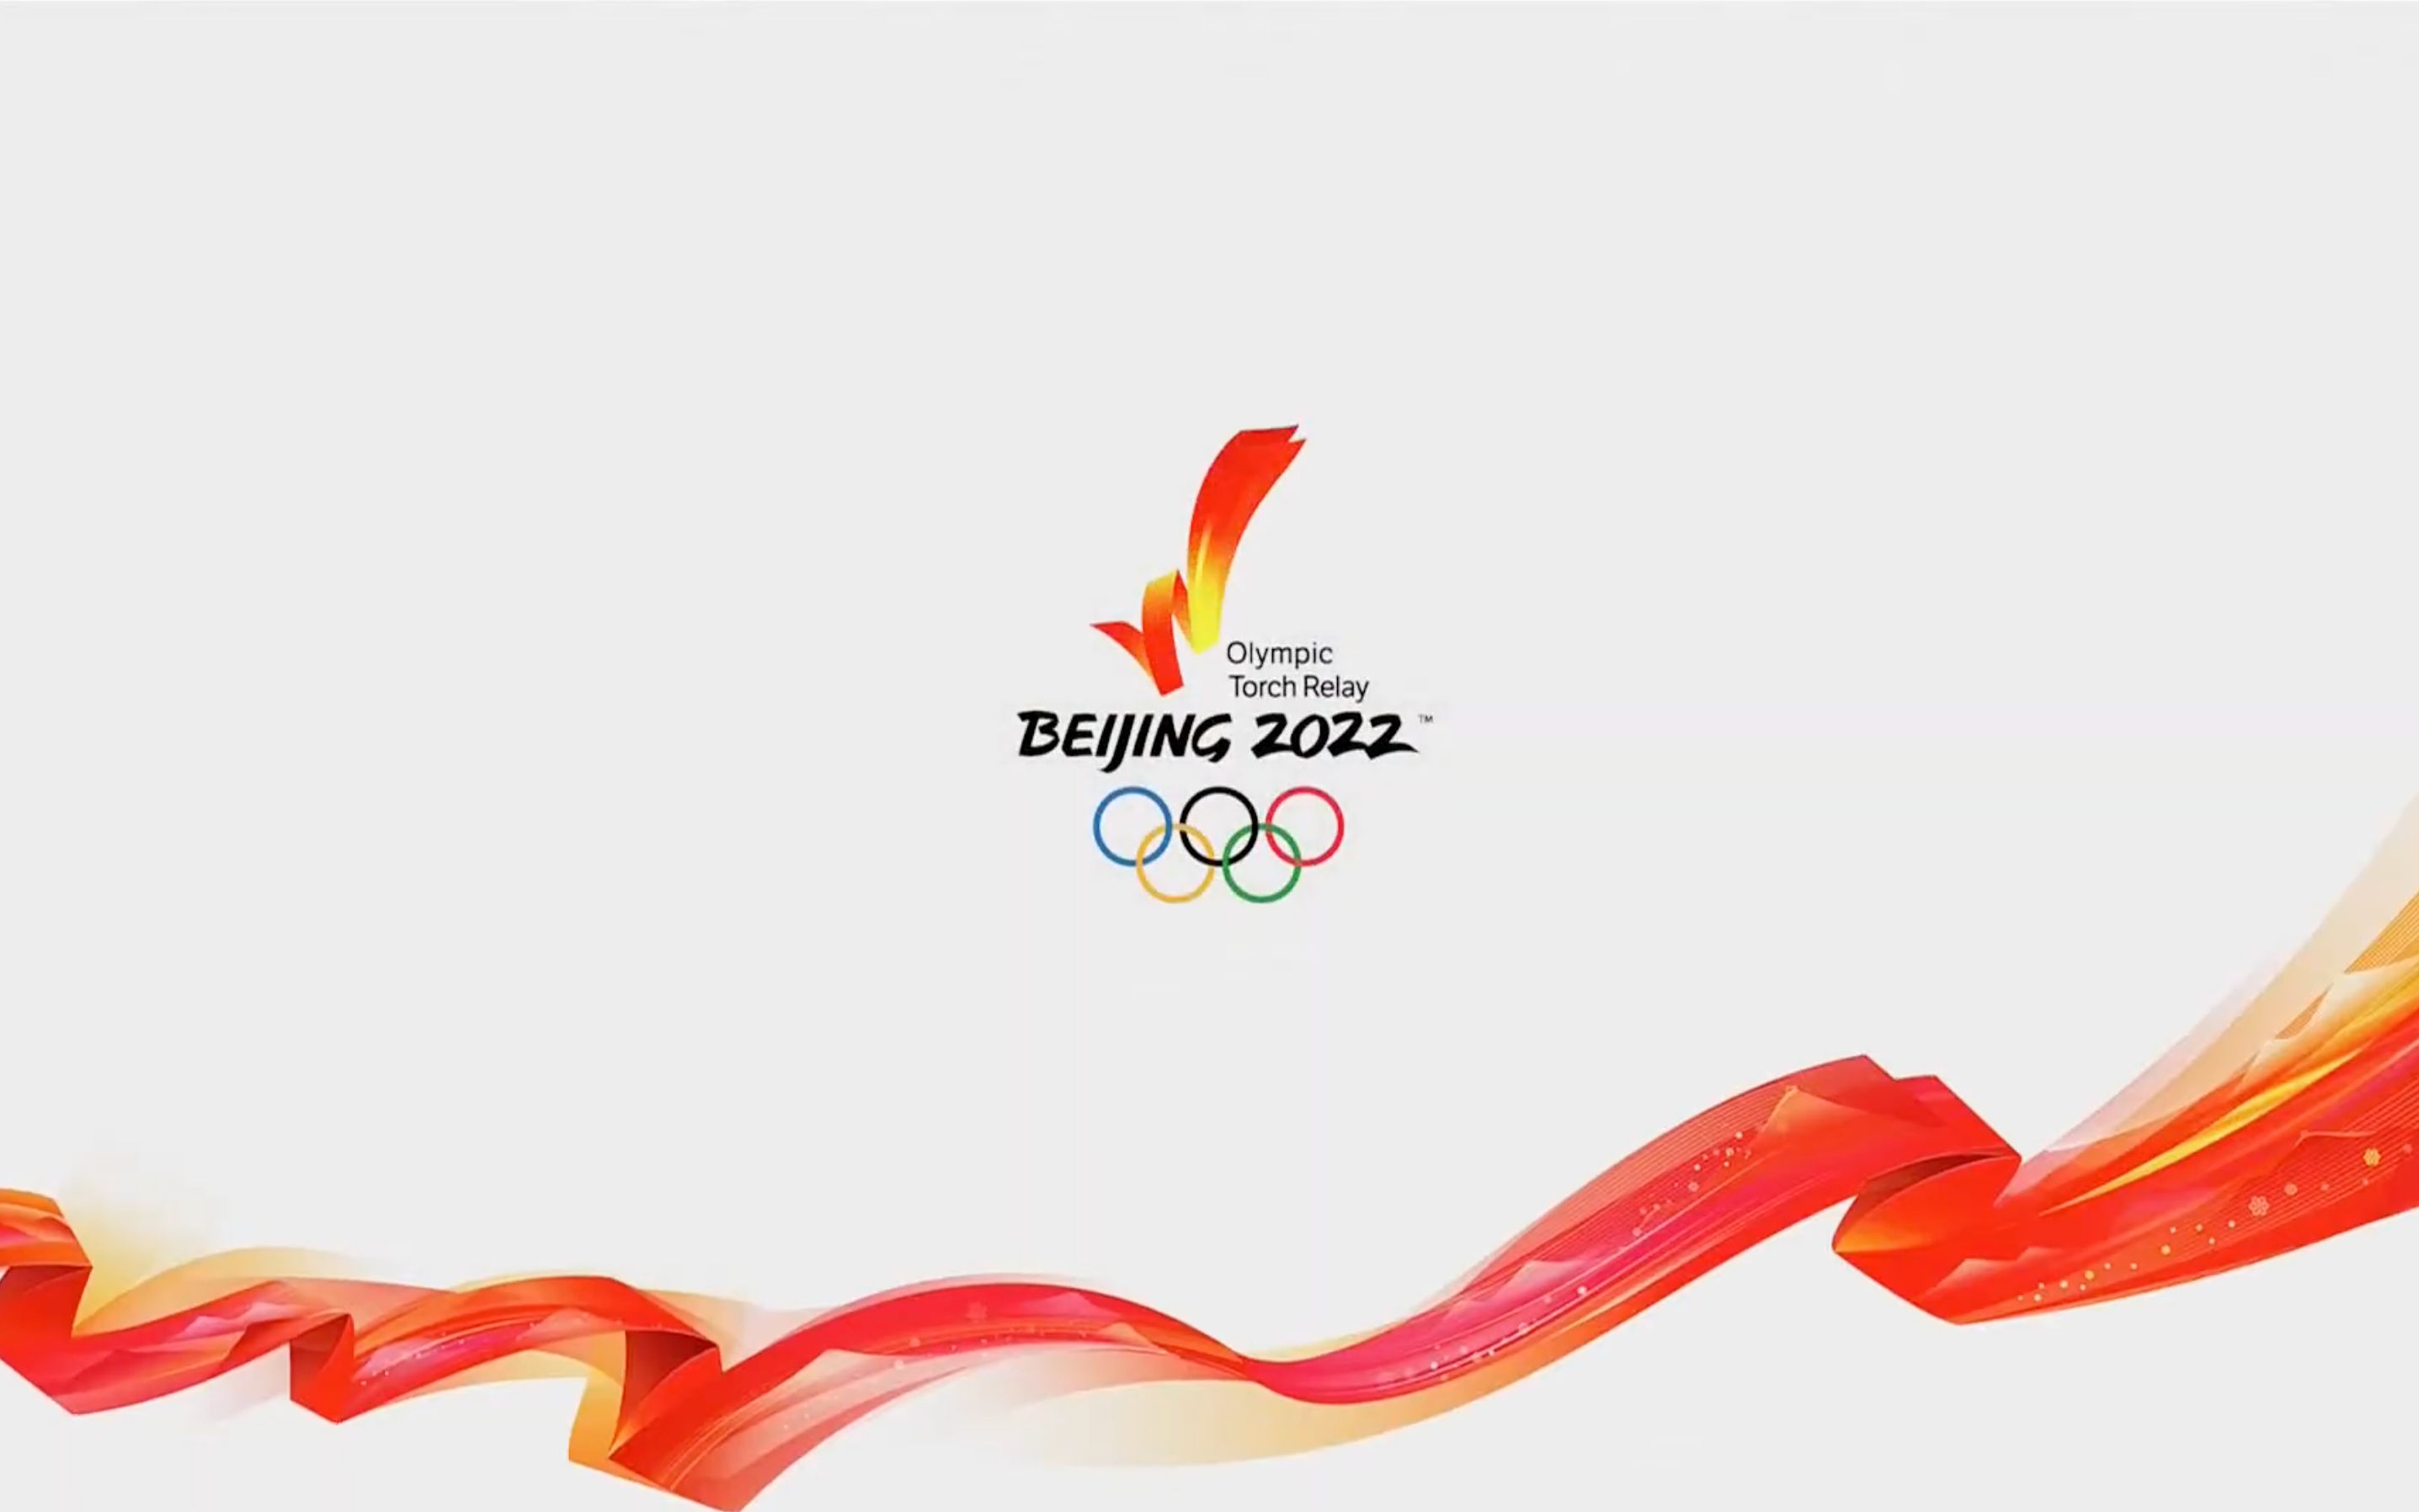 北京冬奥运动会素材图片